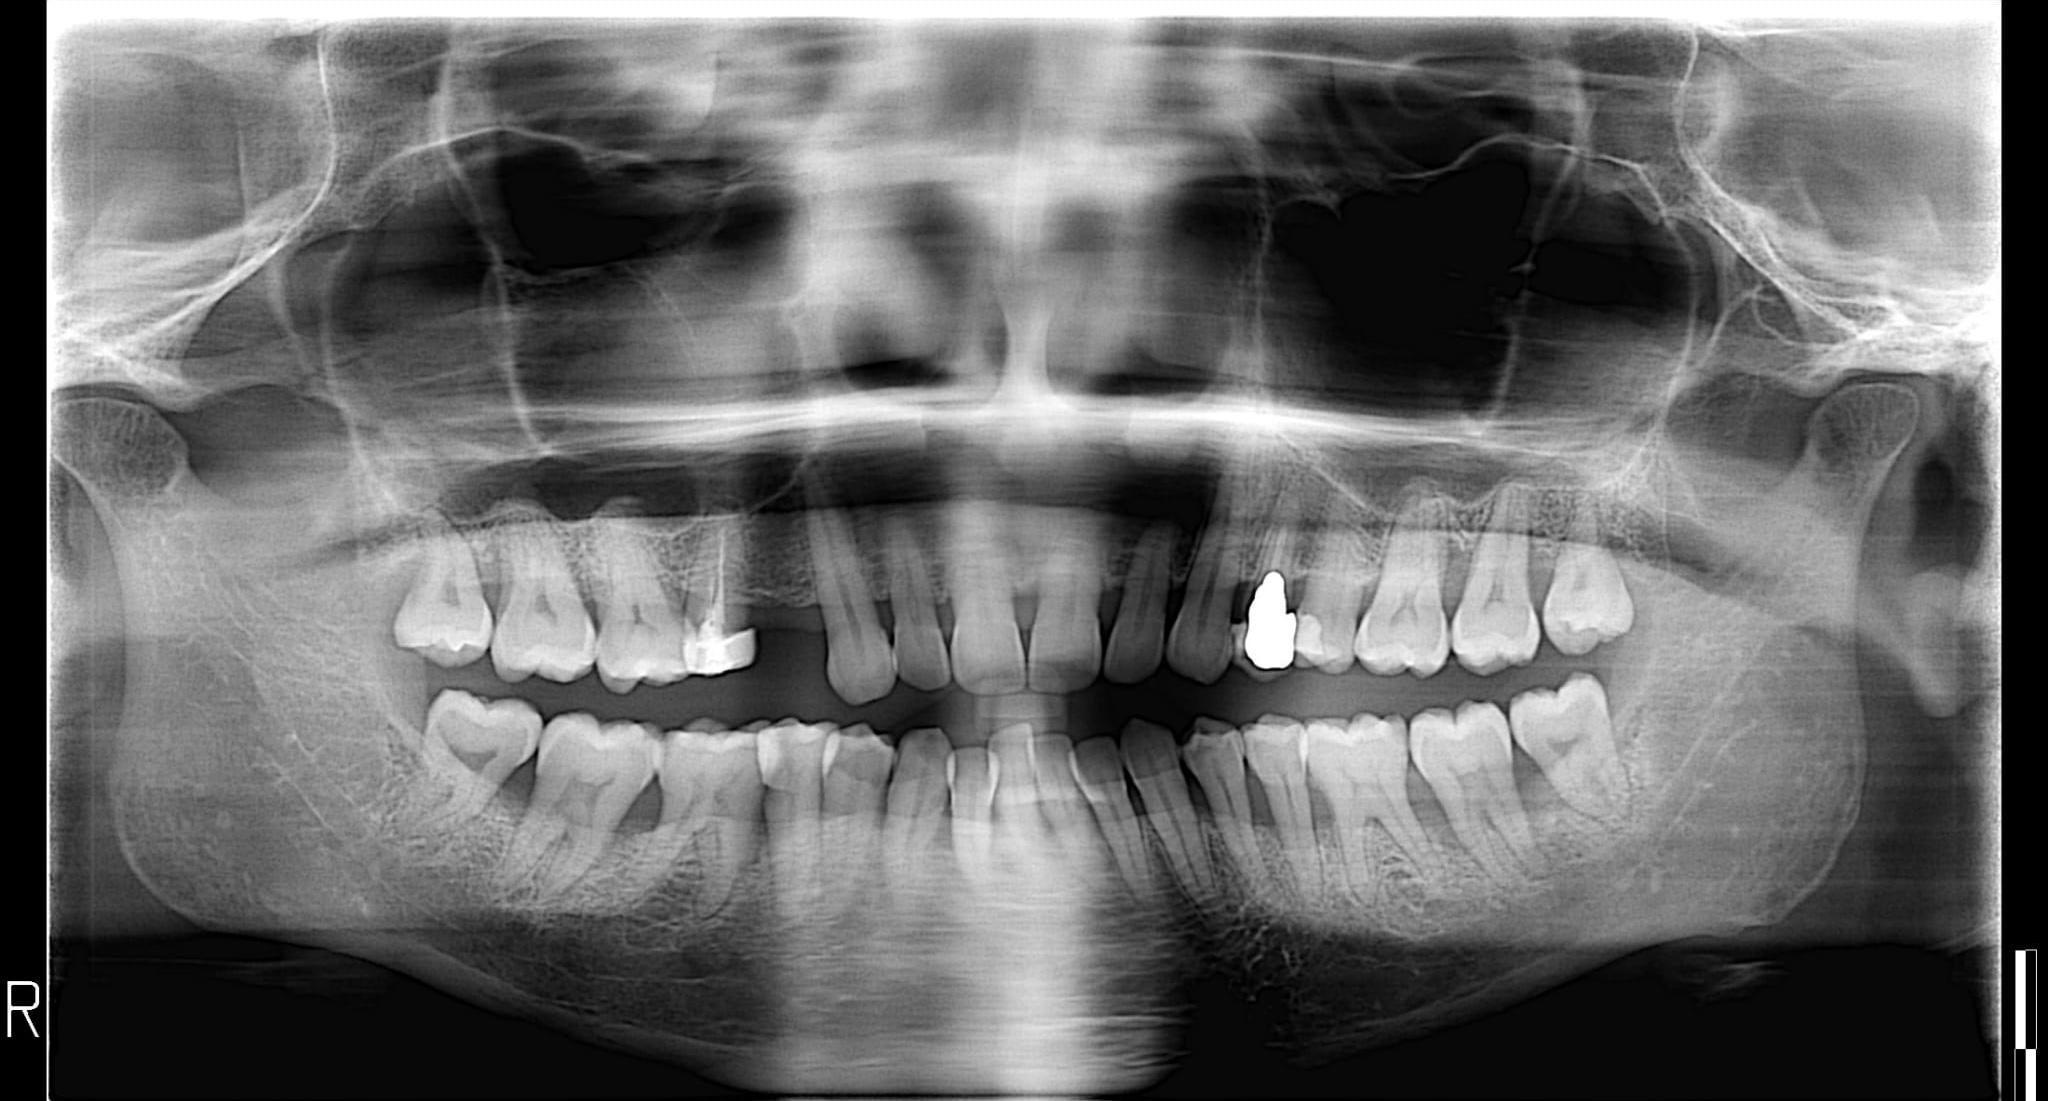 Mi hanno detto che è necessaria l'otturazione di 6 denti e la rimozione dei 4 denti del giudizio